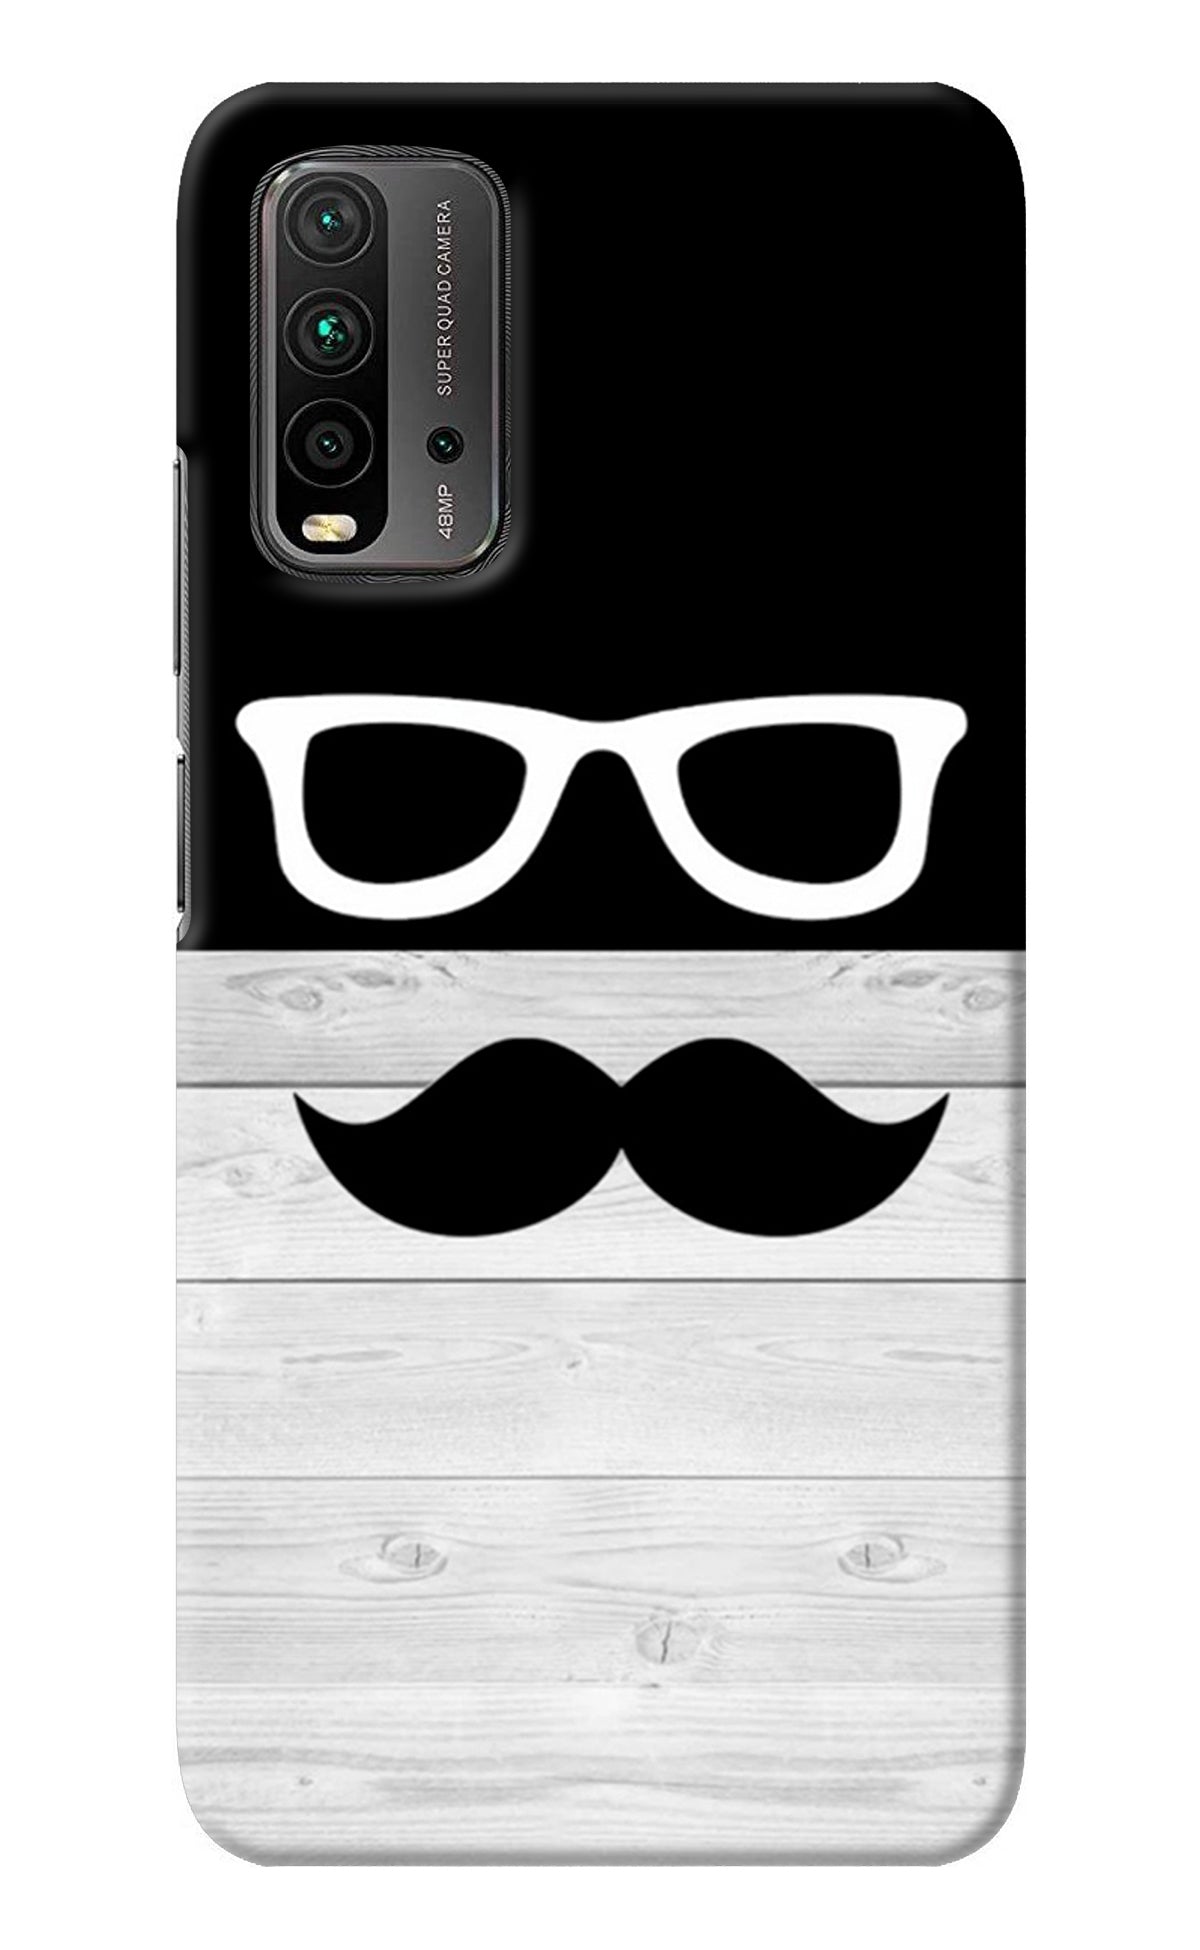 Mustache Redmi 9 Power Back Cover